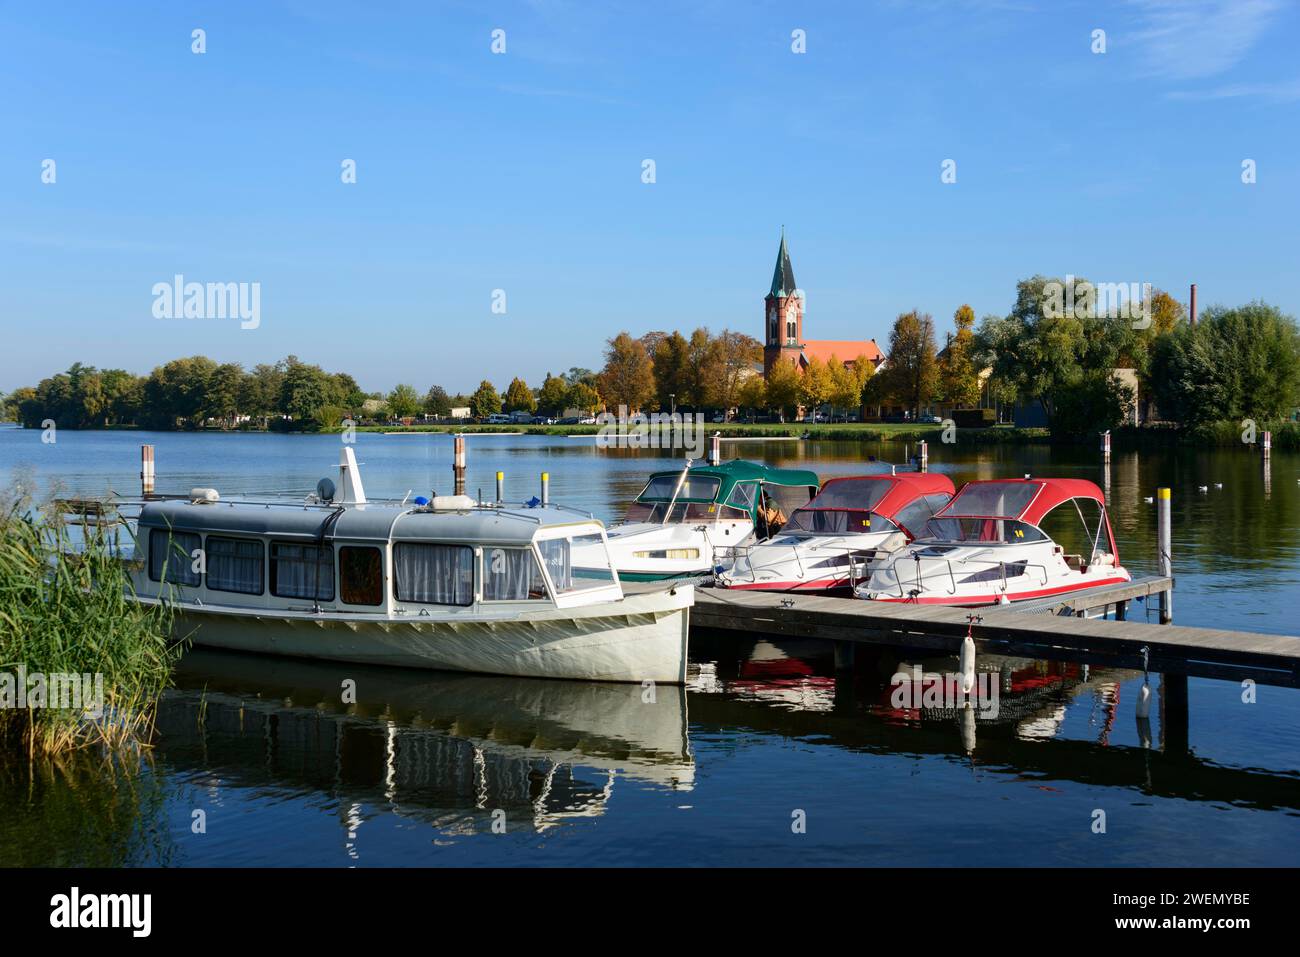 Boote, die auf einem ruhigen See vor einer Kirche liegen, umgeben von Bäumen unter klarem blauem Himmel, Schiffe, Hafen, Kirche Maria Meeresstern, Werder, Insel Stockfoto